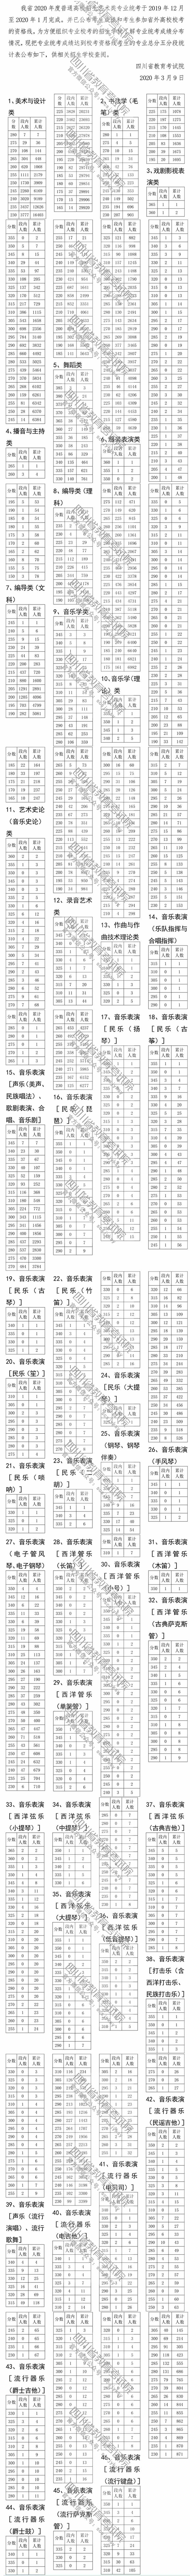 四川2020年艺术类专业统考成绩五分段统计表